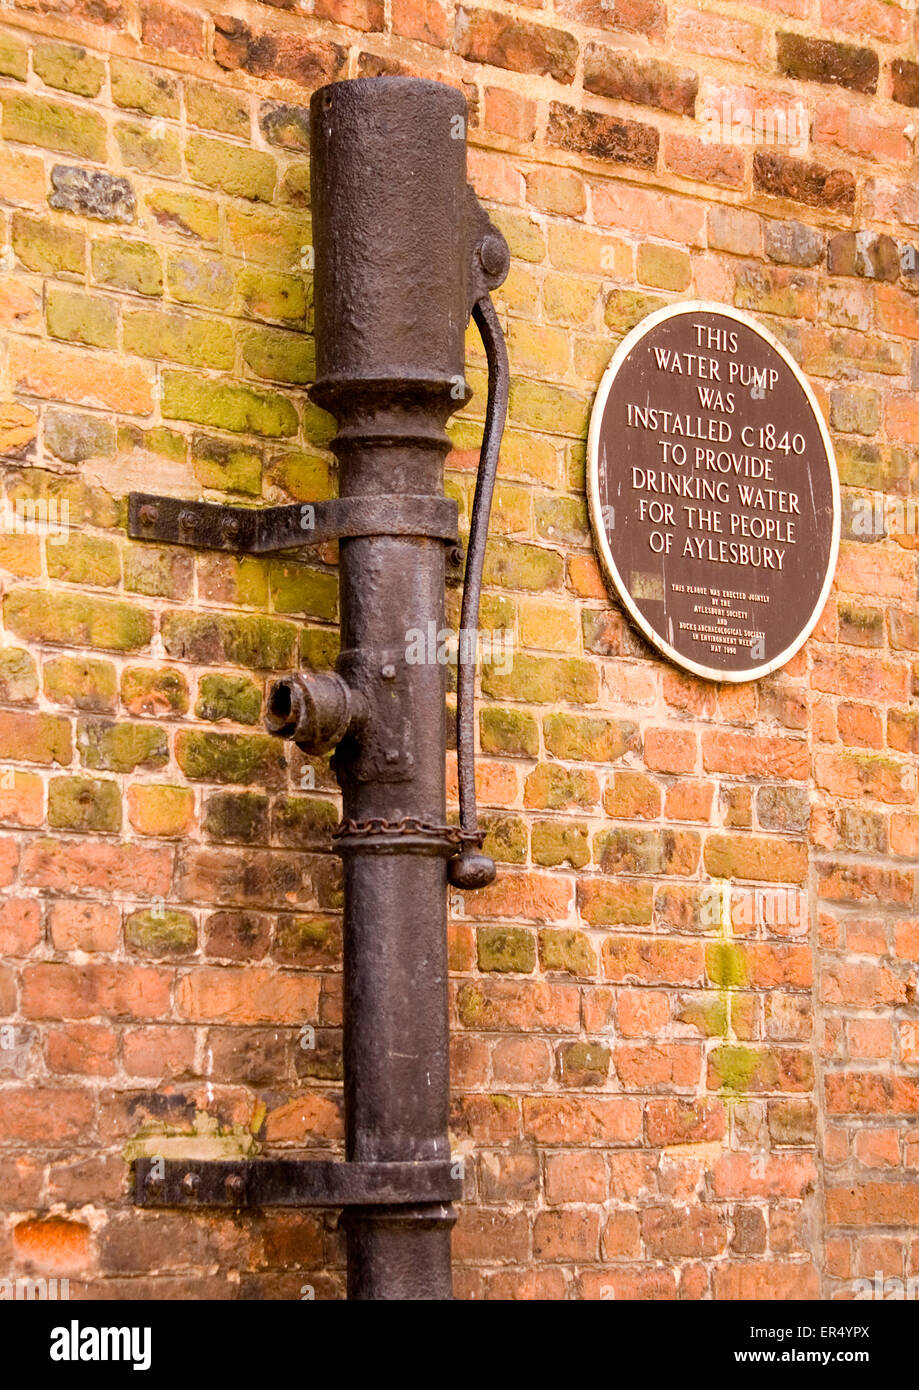 Dollar - Stadt Aylesbury - Sozialgeschichte - Trinkwasser Pumpe - eingerichtet im Jahre 1840 - Schmiedearbeiten - Informationstafel Stockfoto